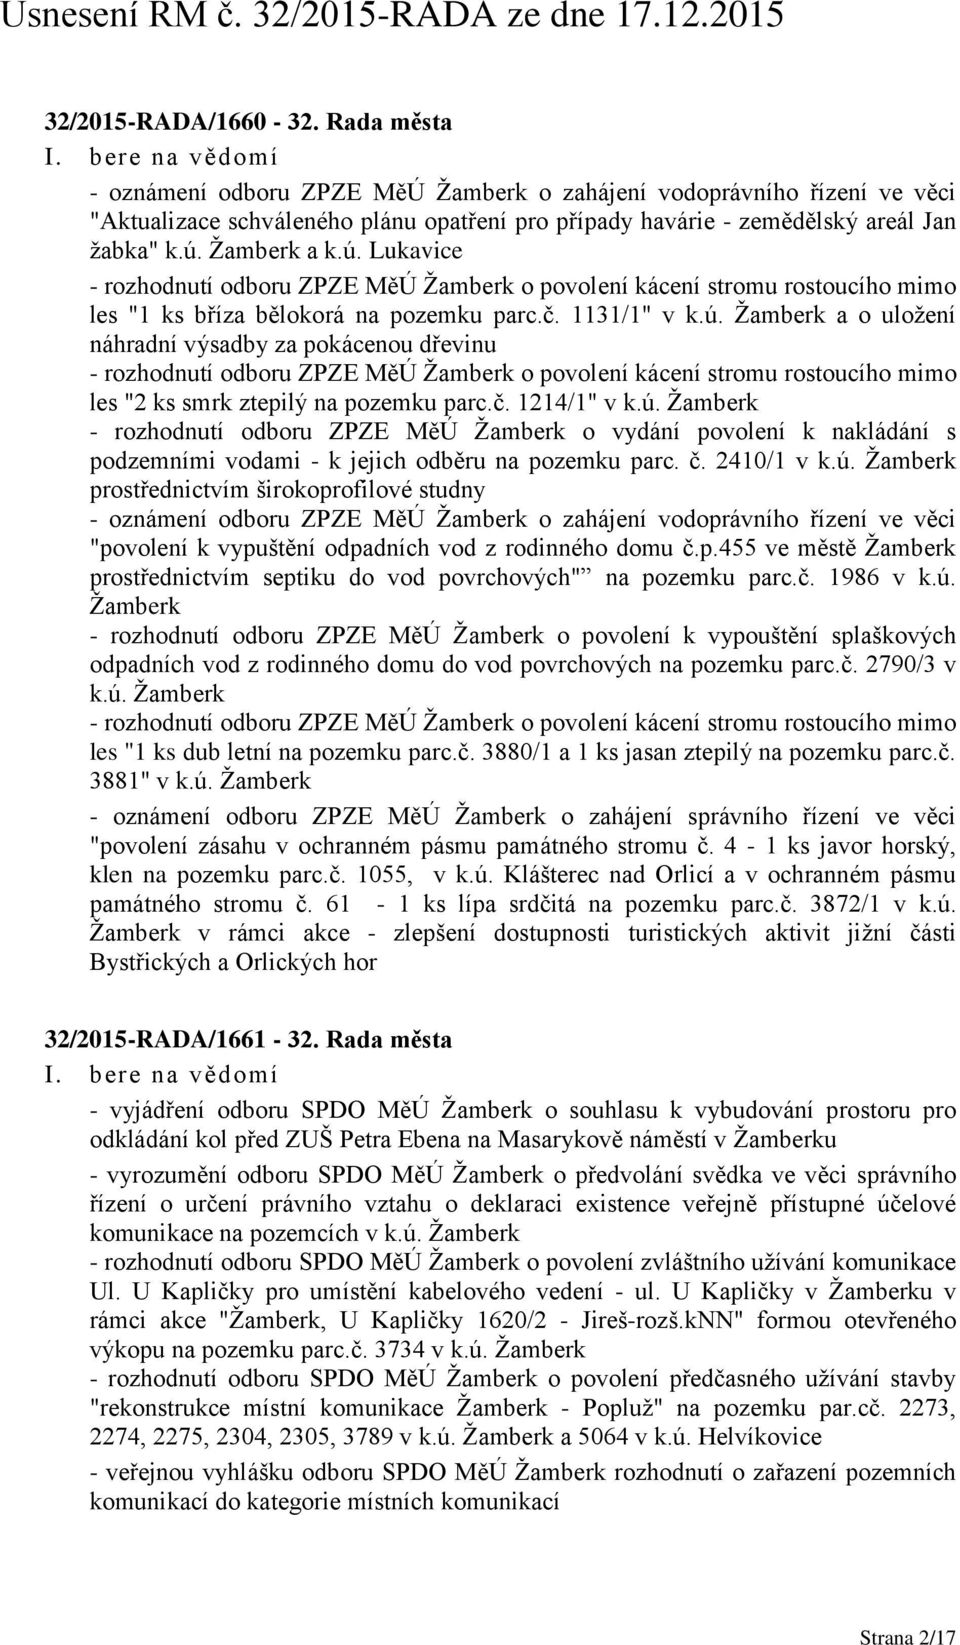 č. 1214/1" v k.ú. Žamberk - rozhodnutí odboru ZPZE MěÚ Žamberk o vydání povolení k nakládání s podzemními vodami - k jejich odběru na pozemku parc. č. 2410/1 v k.ú. Žamberk prostřednictvím širokoprofilové studny - oznámení odboru ZPZE MěÚ Žamberk o zahájení vodoprávního řízení ve věci "povolení k vypuštění odpadních vod z rodinného domu č.